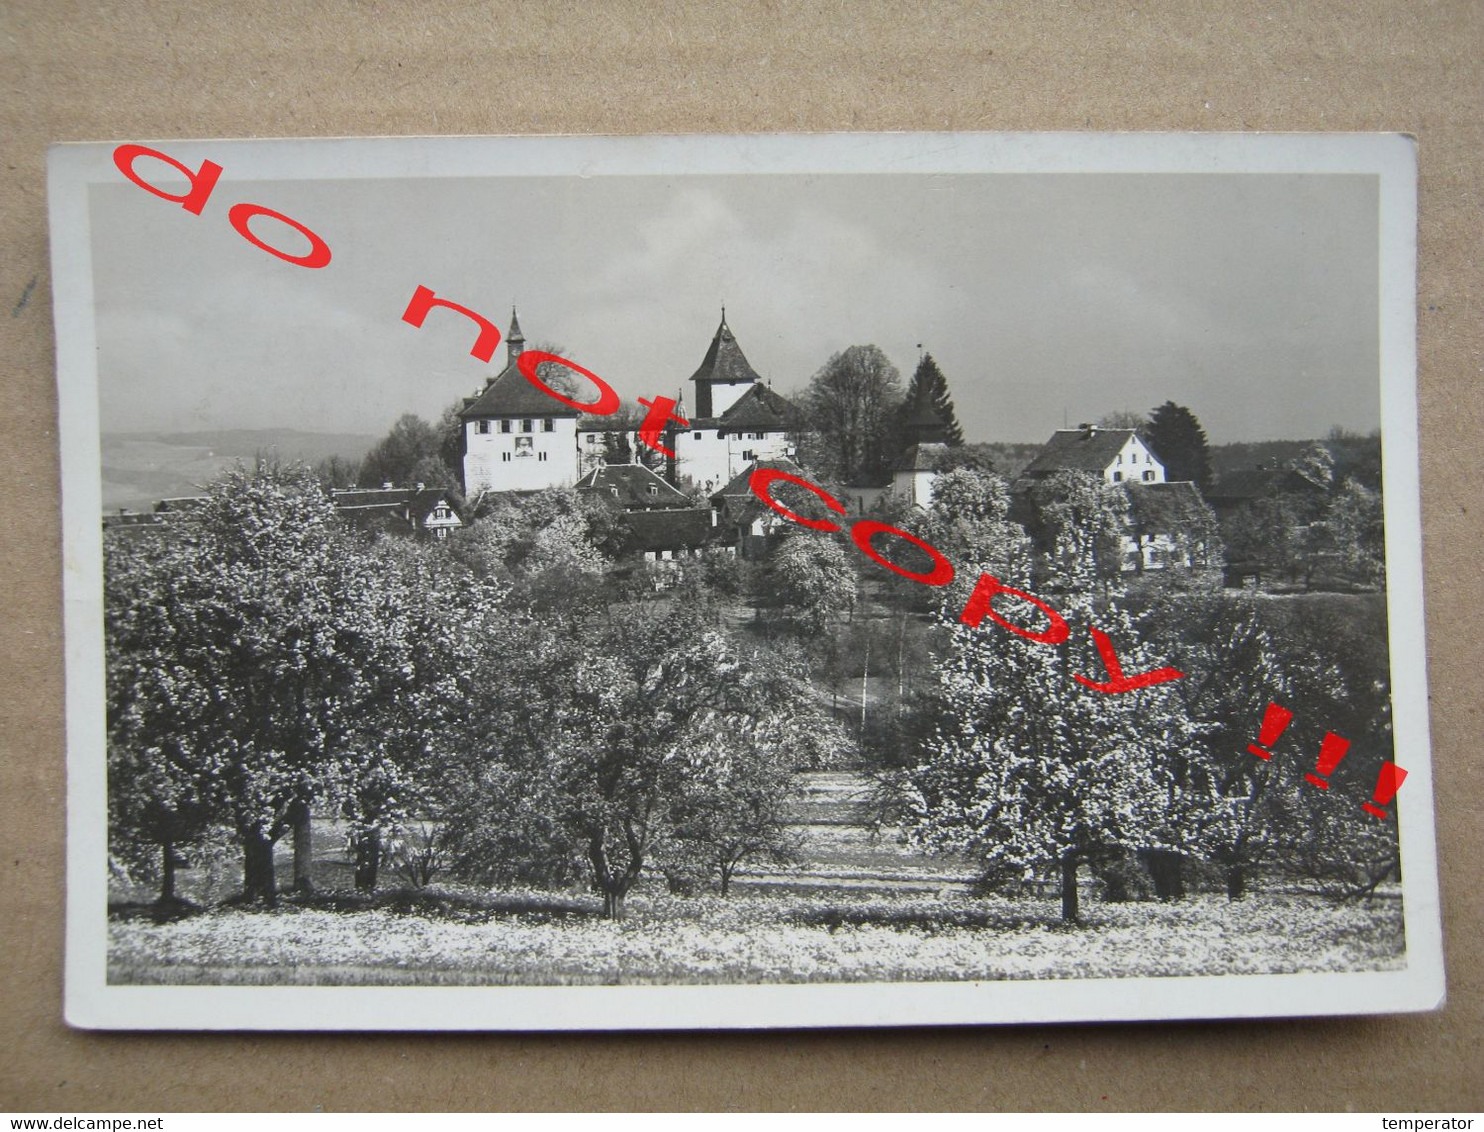 Switzerland / Suisse / Svizzera / Schweiz - Schloss Kyburg - Photo Oetiker Kusnacht ( Traveled To Novi Sad ) - Küsnacht